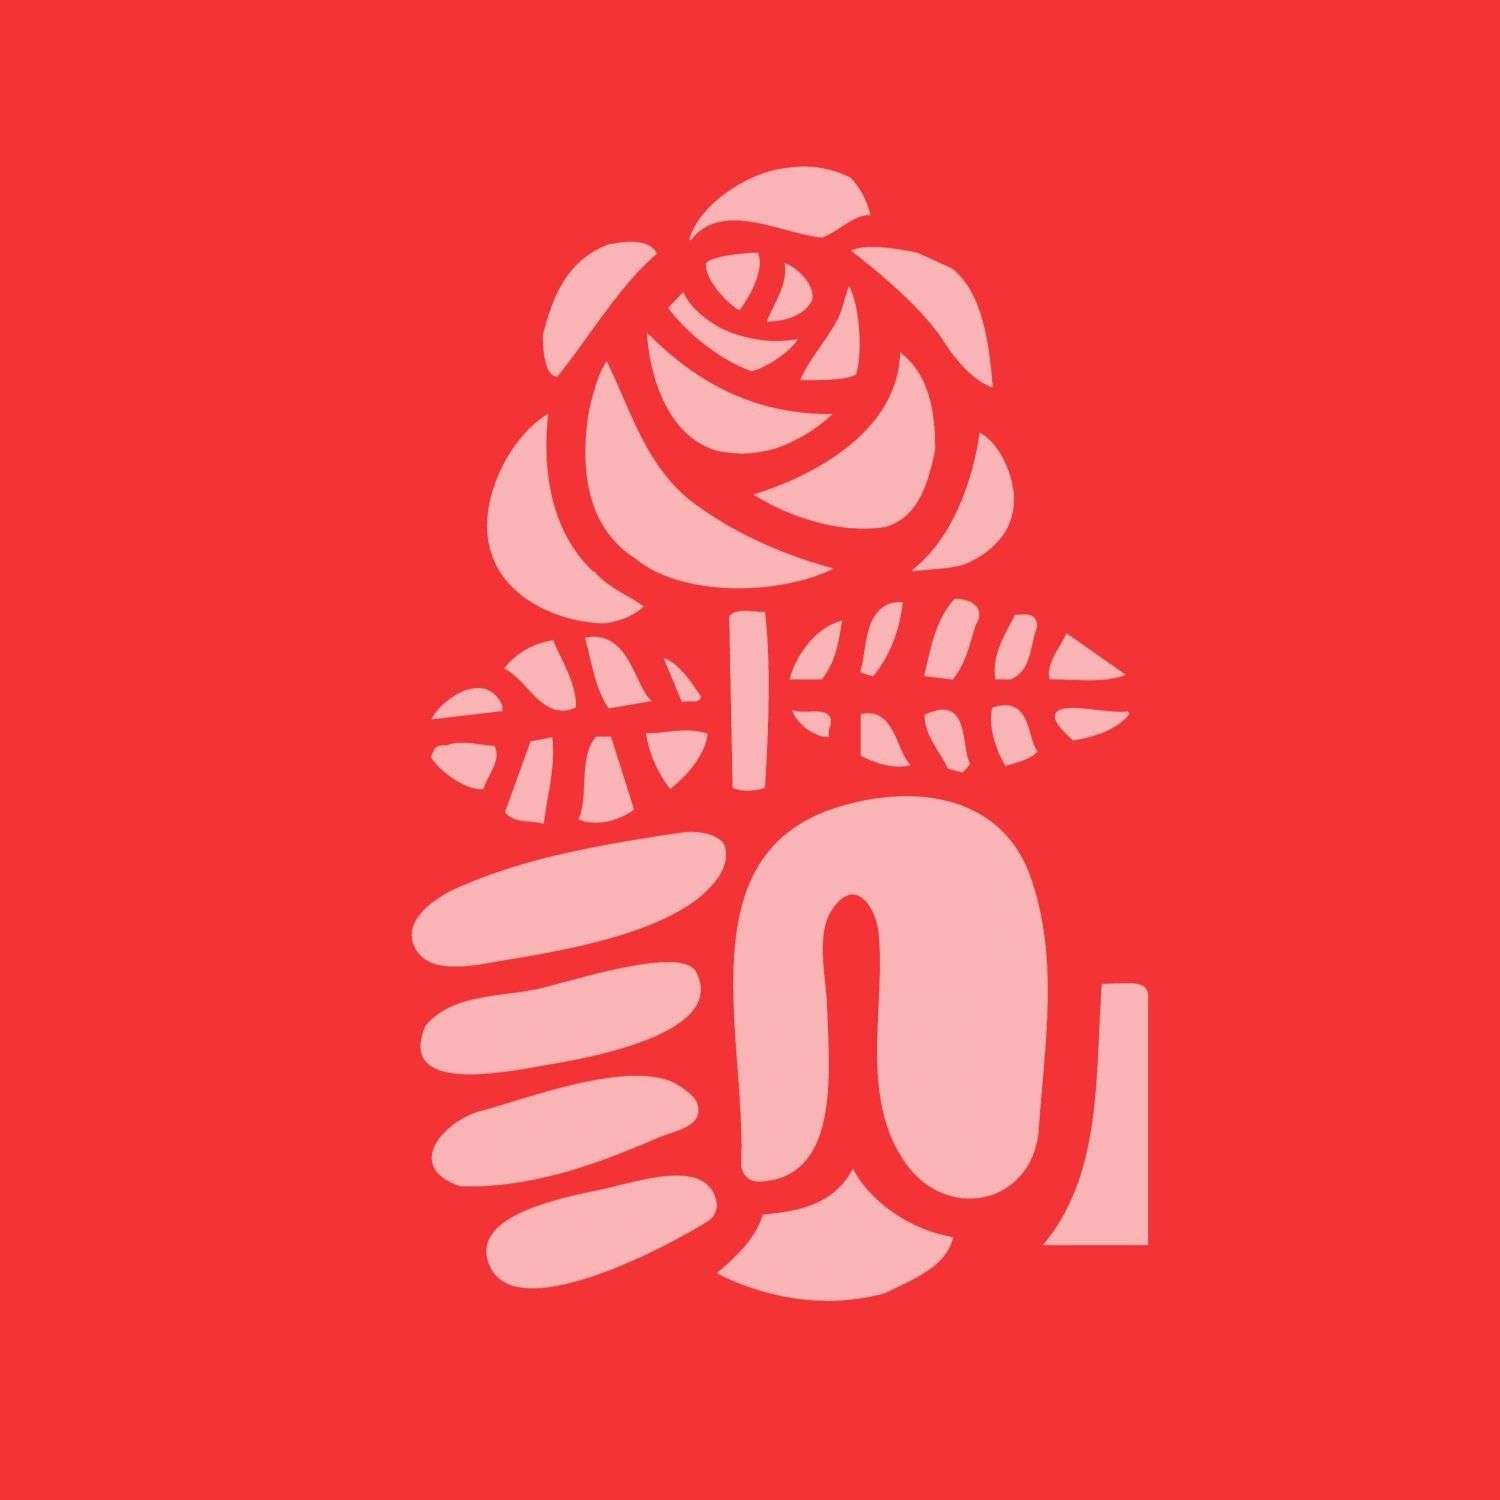 Motion du parti socialiste « Eteindre la lumière pour éclairer notre avenir »